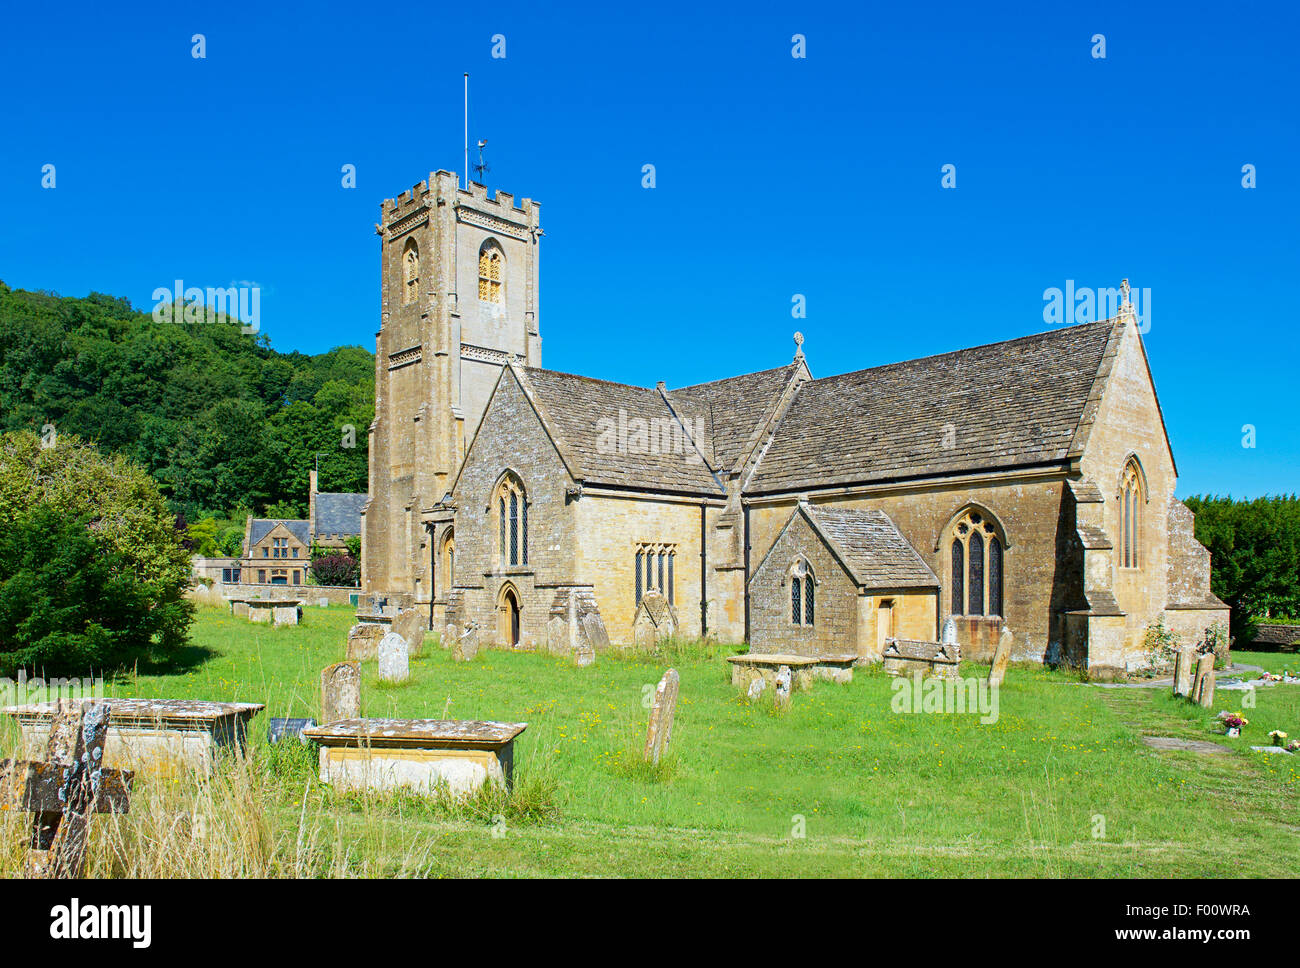 St Catherine's Church, dans le village de Montacute, Somerset, England UK Banque D'Images